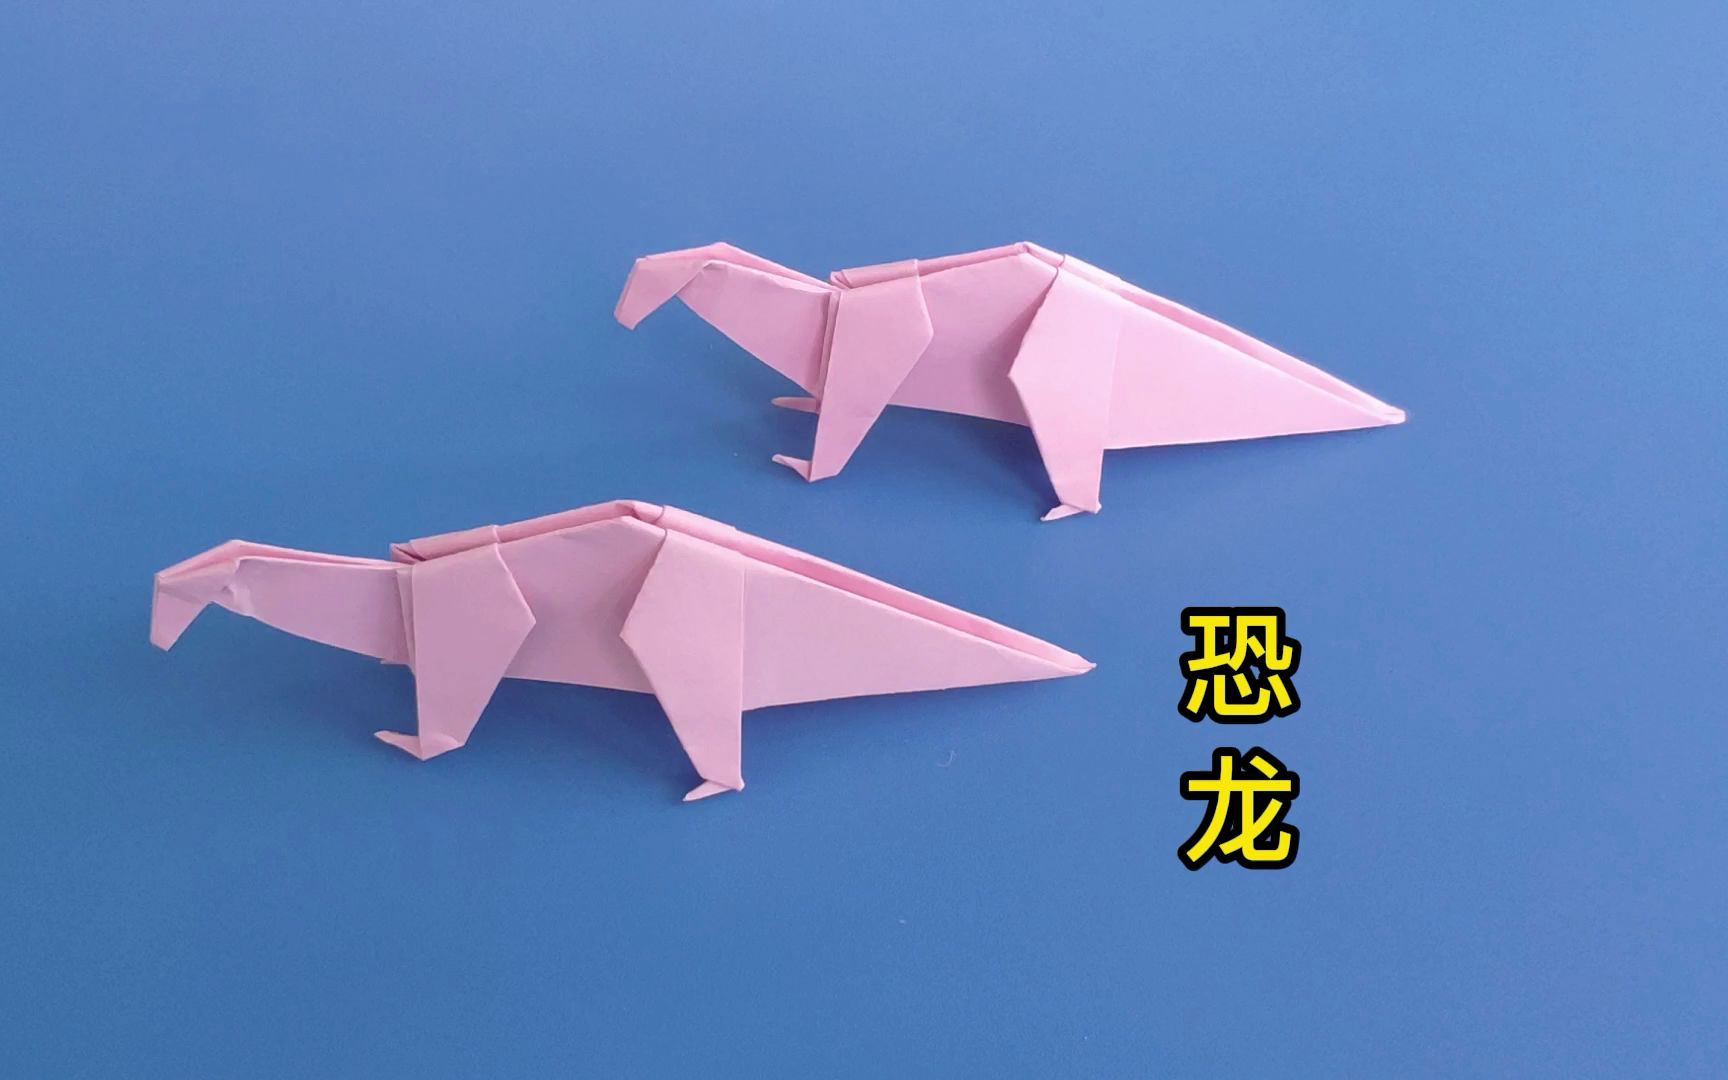 超酷手工折纸龙-怪物猎人X雄火龙/超级酷的折纸教程_哔哩哔哩 (゜-゜)つロ 干杯~-bilibili